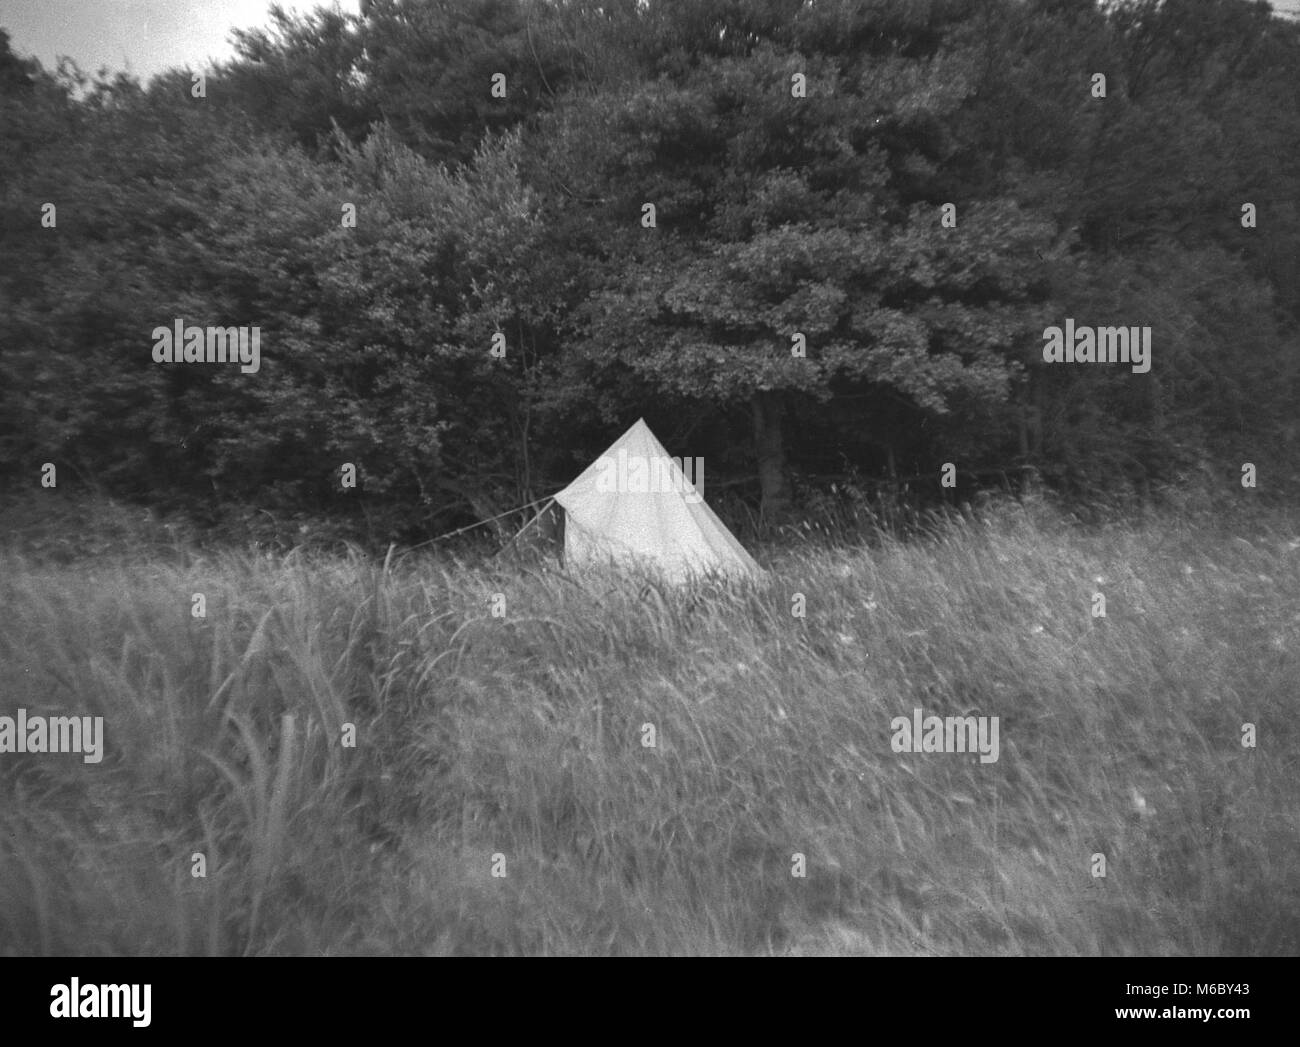 1960s, historisch, ein traditionelles Leinenzelt, geformt wie ein Wigwam, saß auf einem Rasen umgeben von Wald, England, Großbritannien. Stockfoto